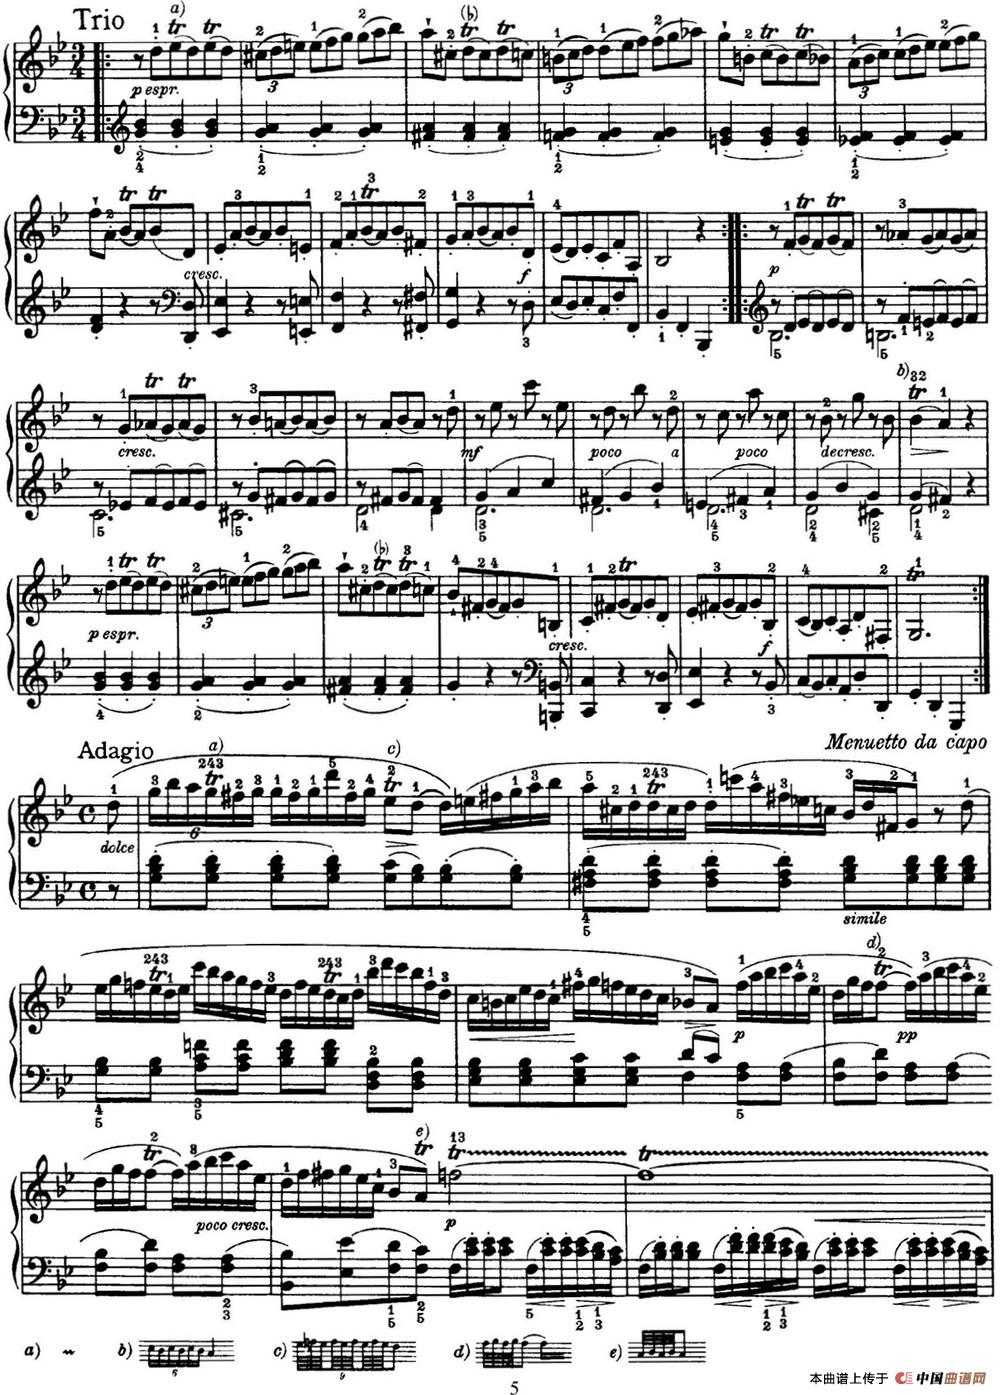 《海顿 钢琴奏鸣曲 Hob XVI 6 Partita G major》钢琴曲谱图分享